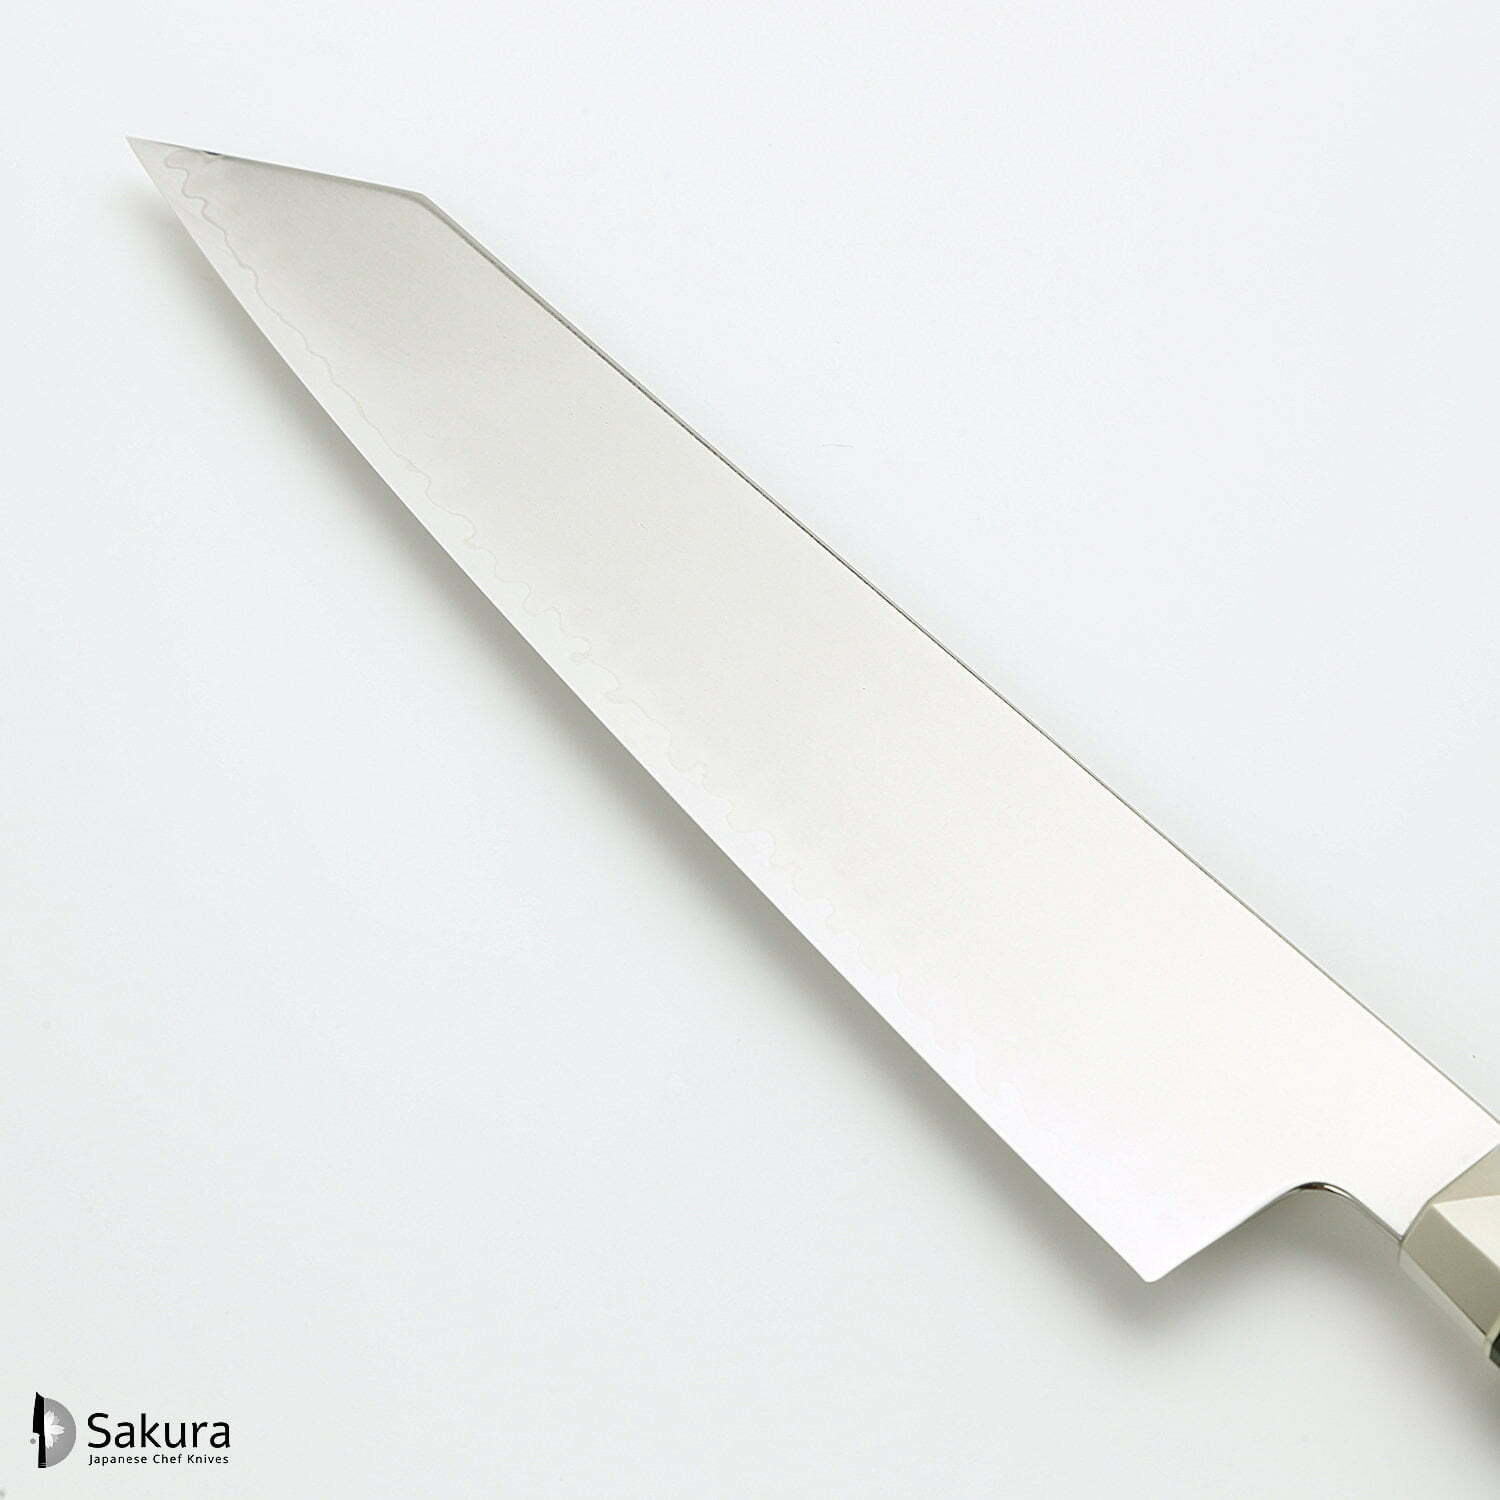 סכין שף רב-תכליתית קִּירִיצוּקֶה 230מ״מ מחושלת בעבודת יד 3 שכבות: פלדת פחמן יפנית מתקדמת מסוג R2/SG2 עטופה פלדת אל-חלד גימור מט מלוטש מקוסטה זאנמאיי יפן ZRG-1206G